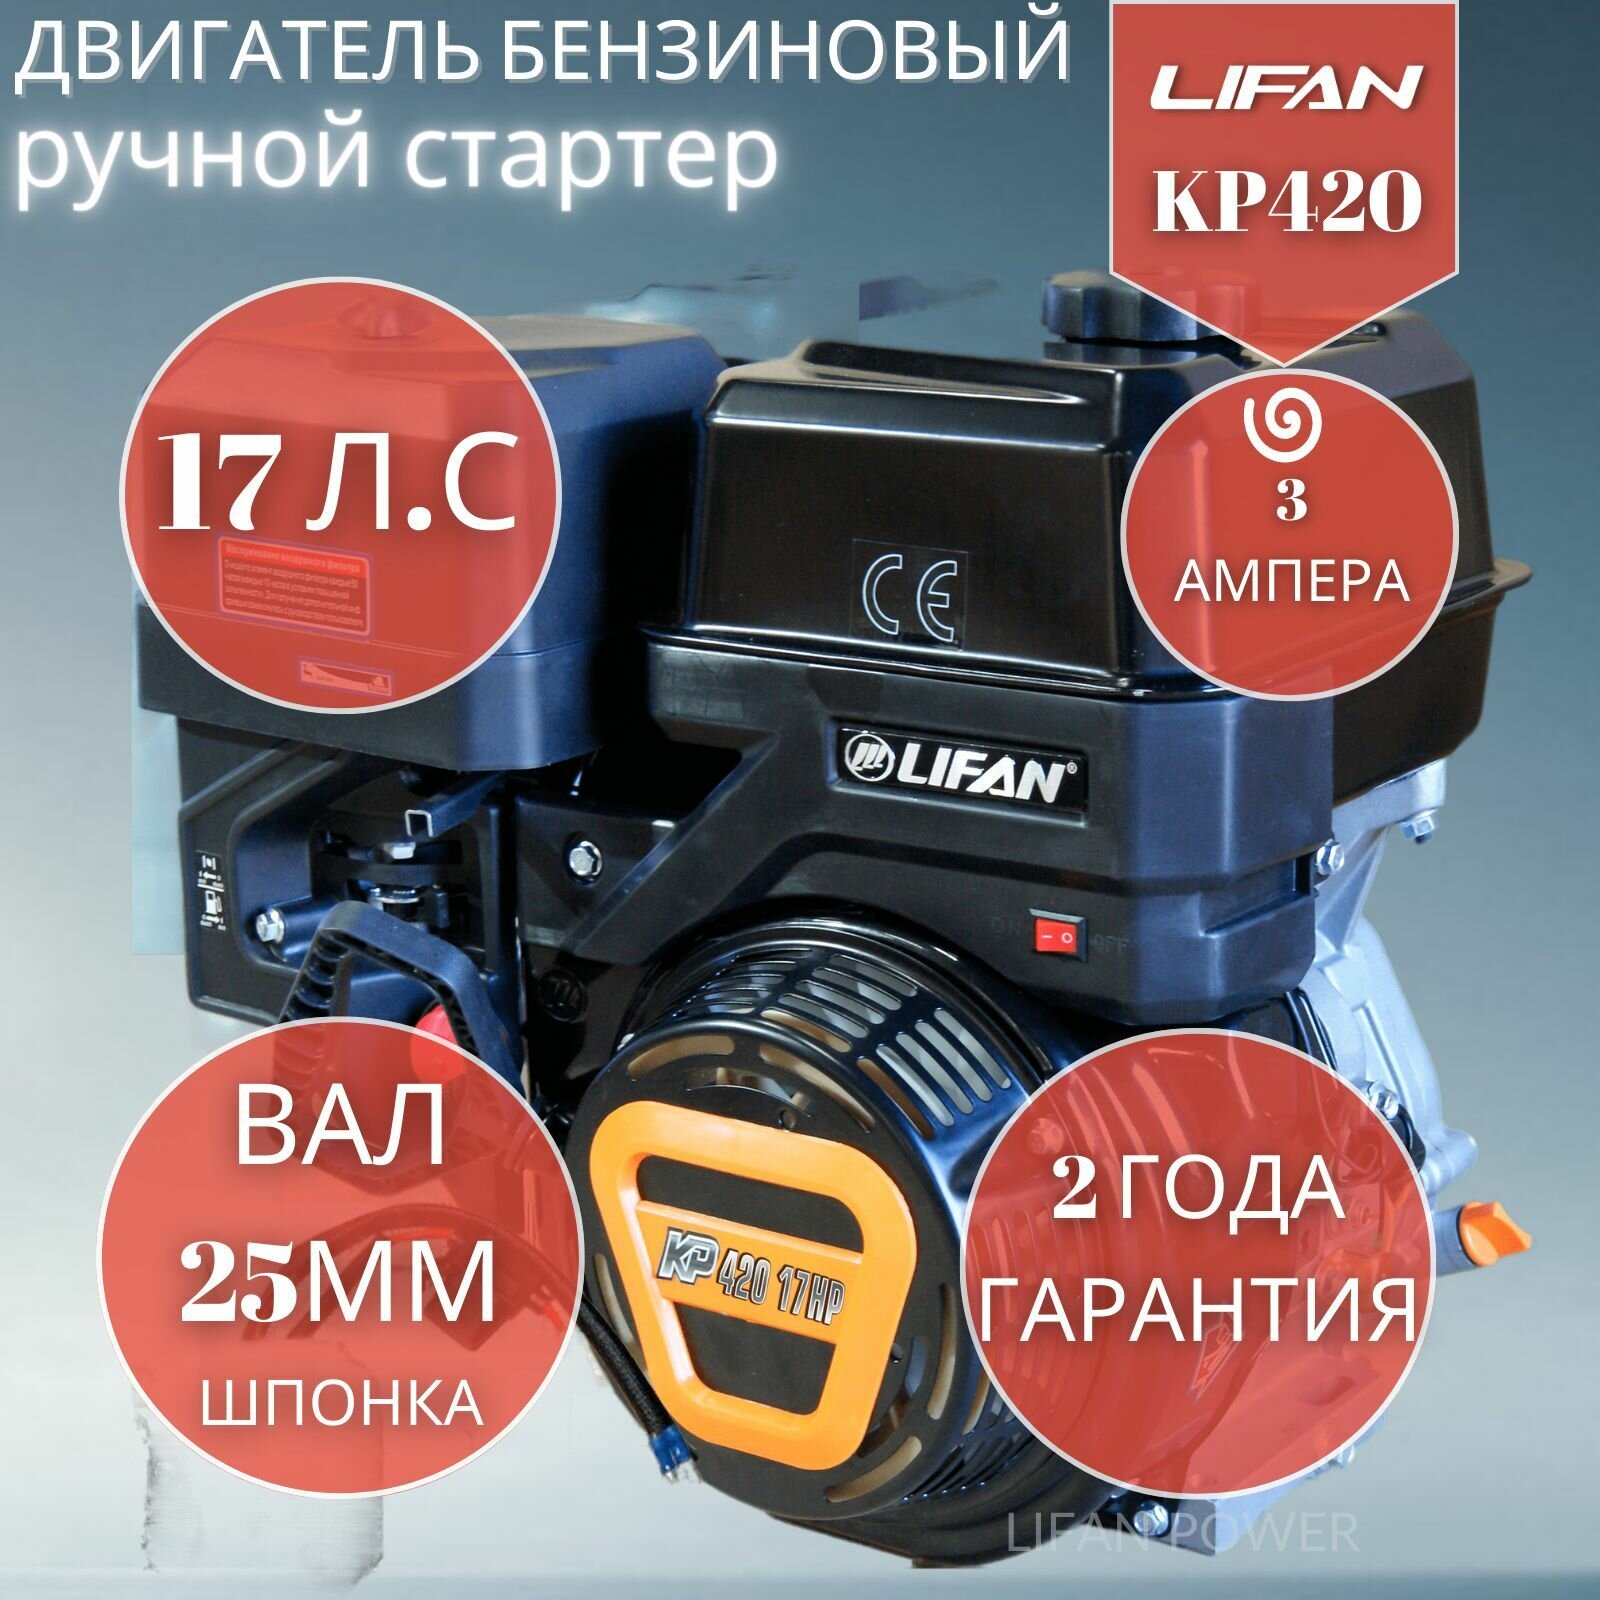 Двигатель бензиновый Lifan KP420 3А ручной стартер (17 л. с.)190F-2T-3А